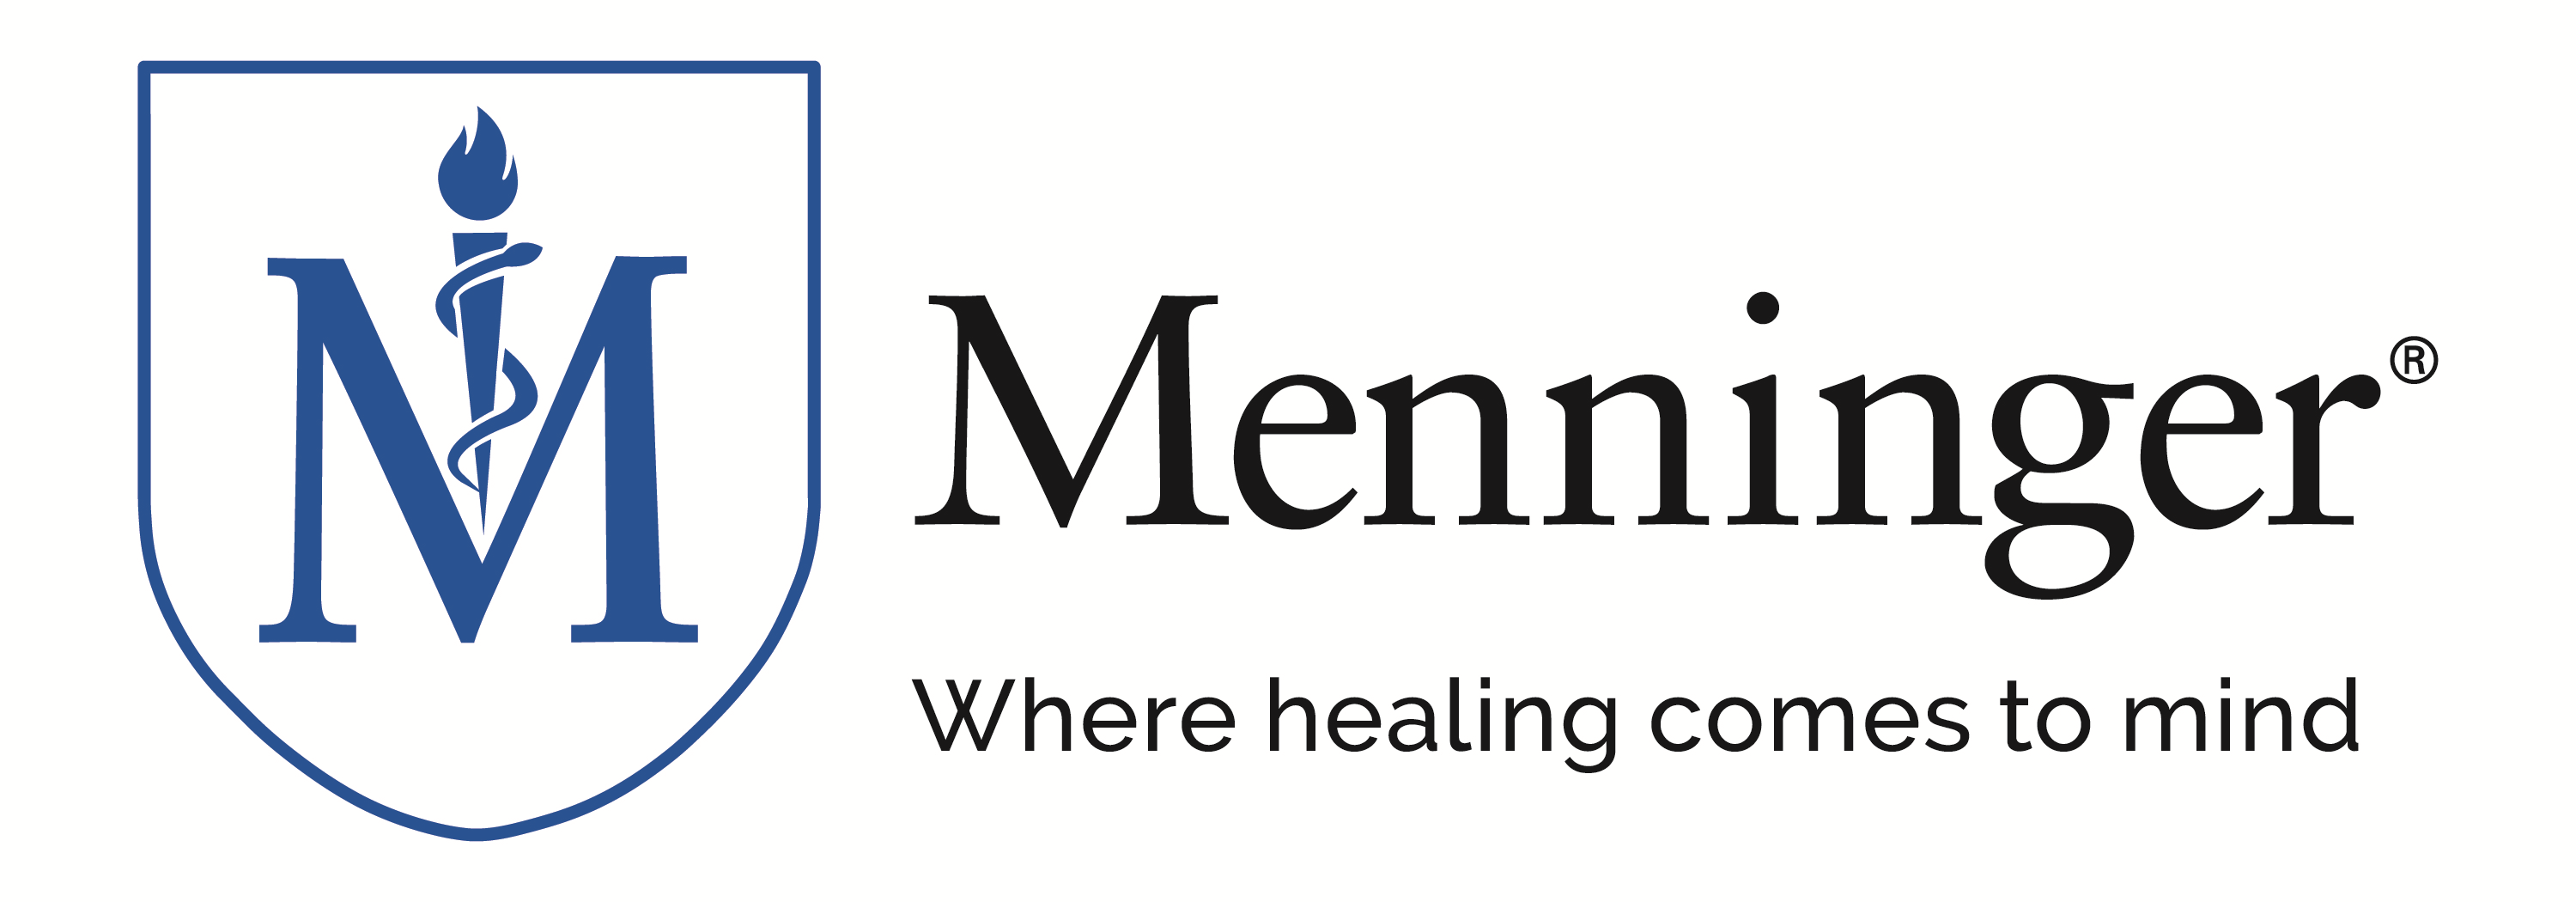 The Menninger Clinic logo